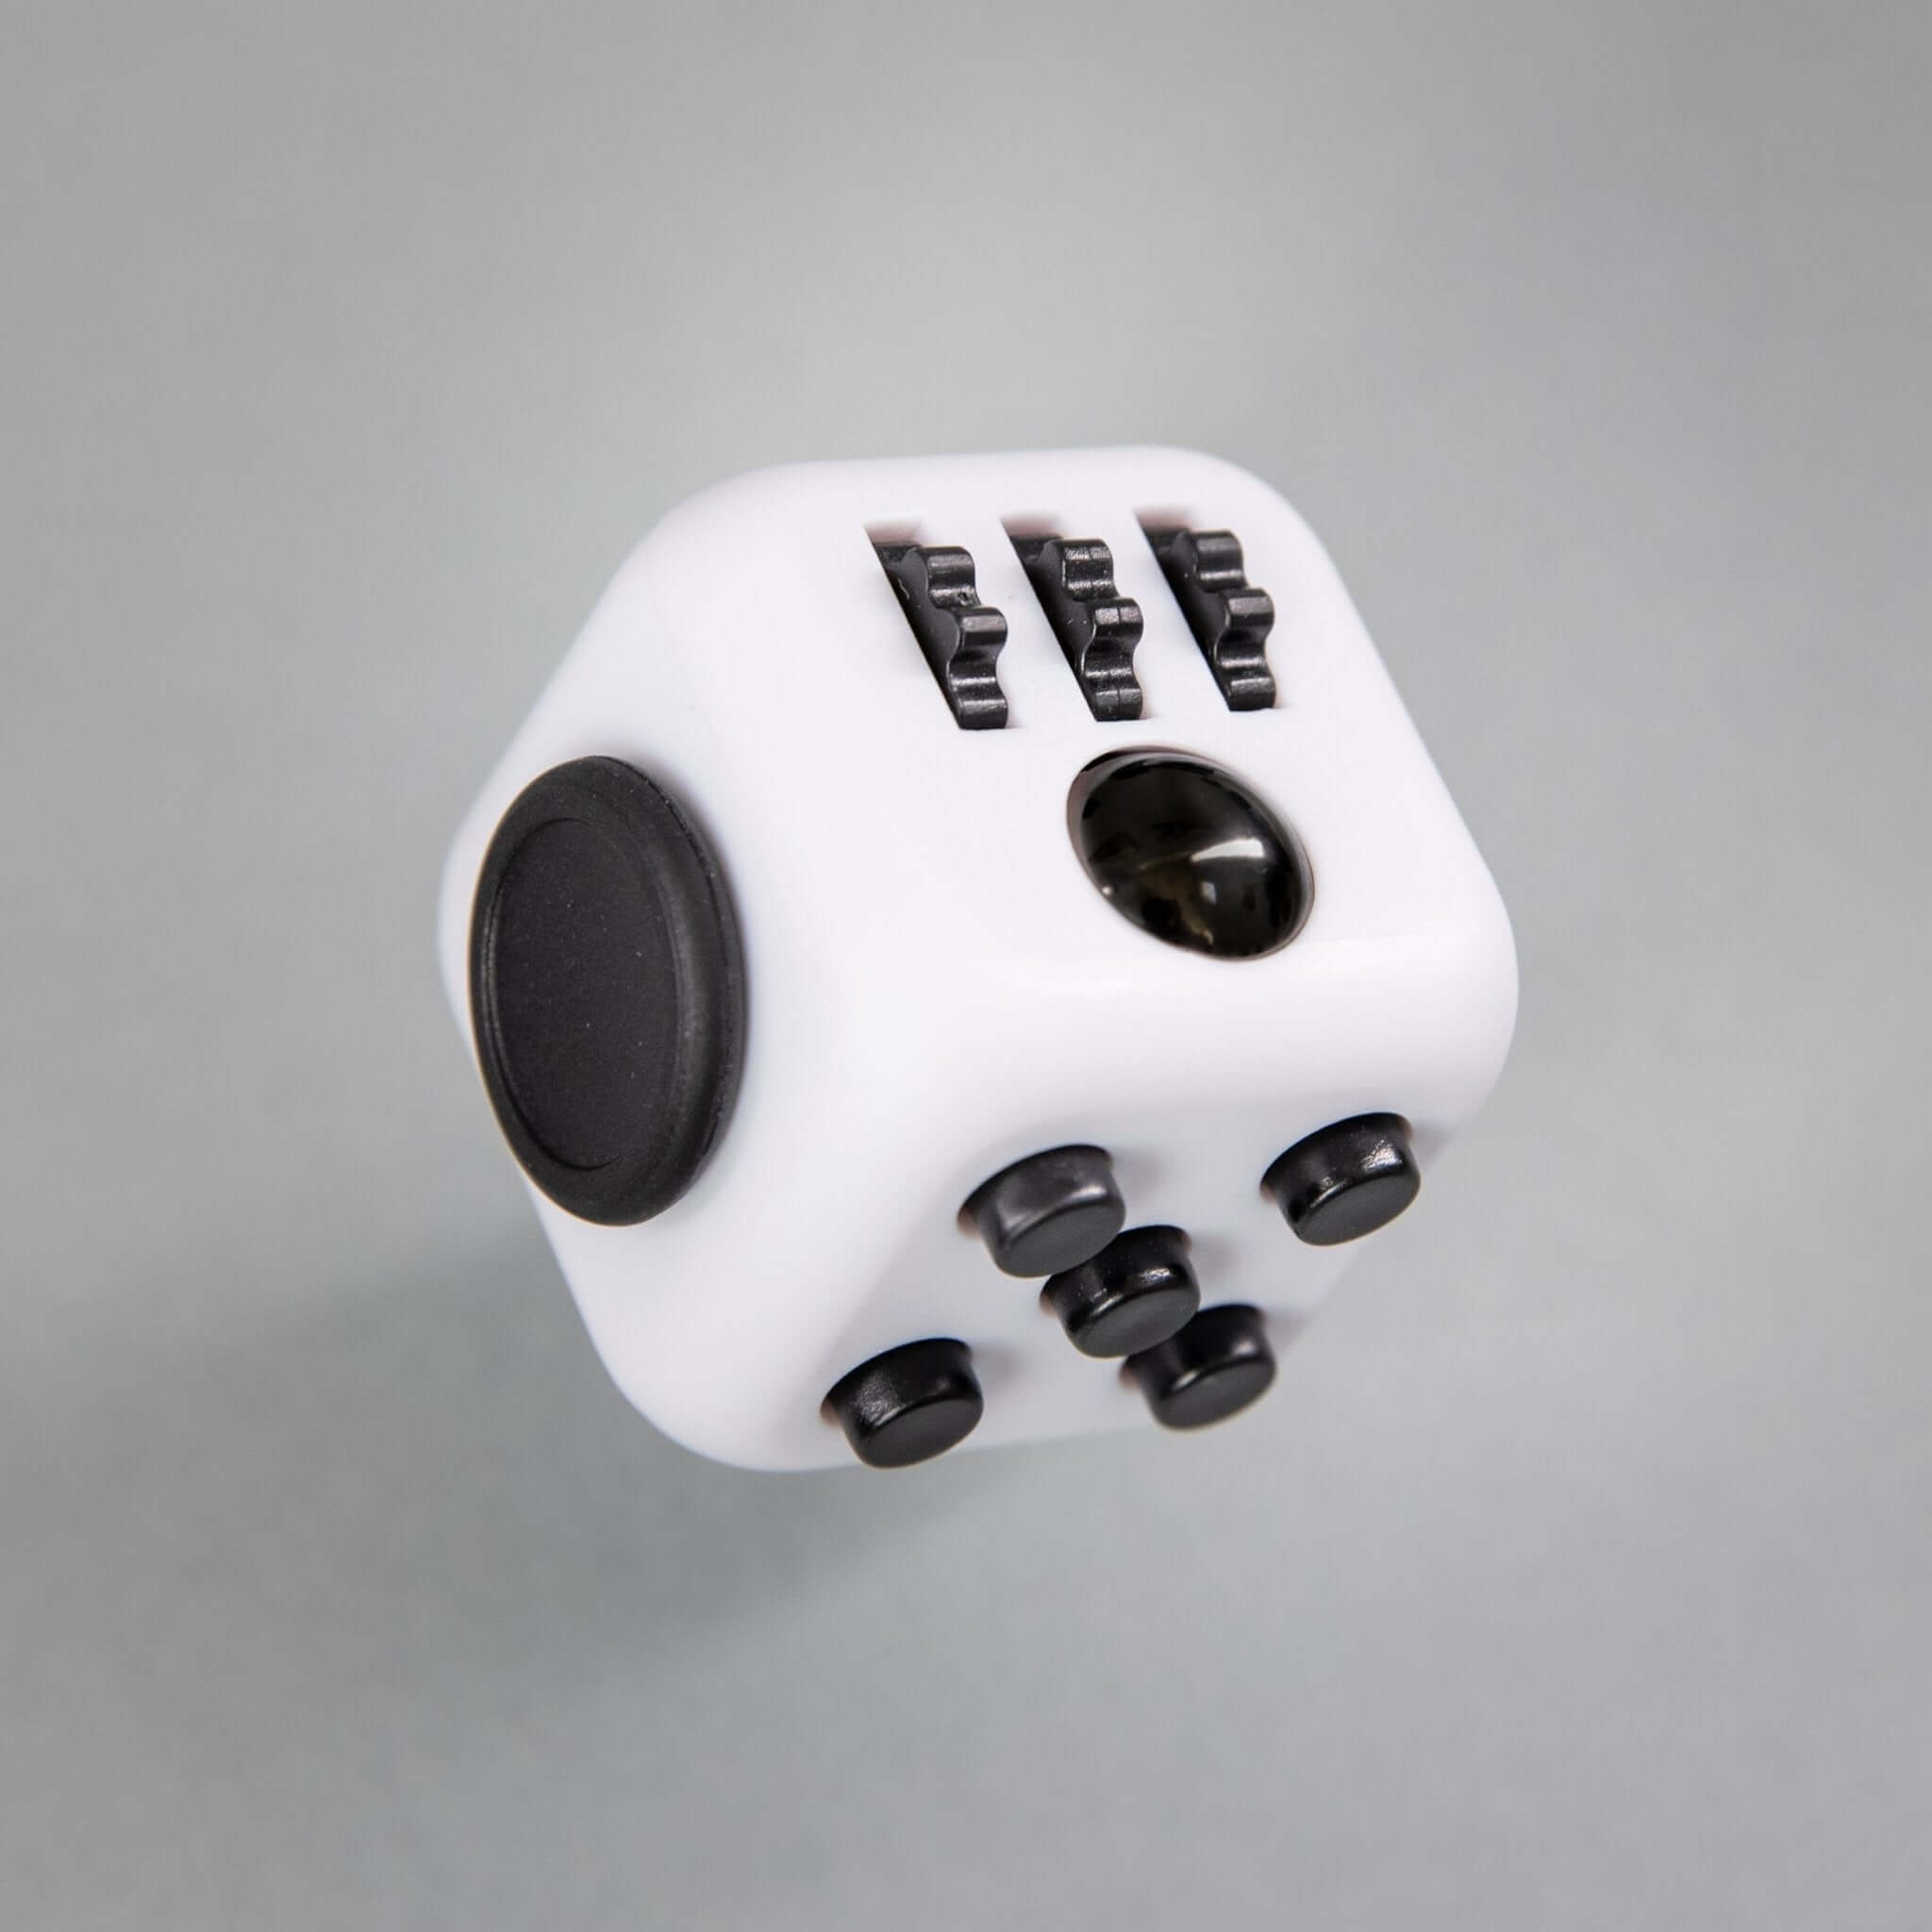 Get Fidget Cubes From Original Kickstarter Product Run